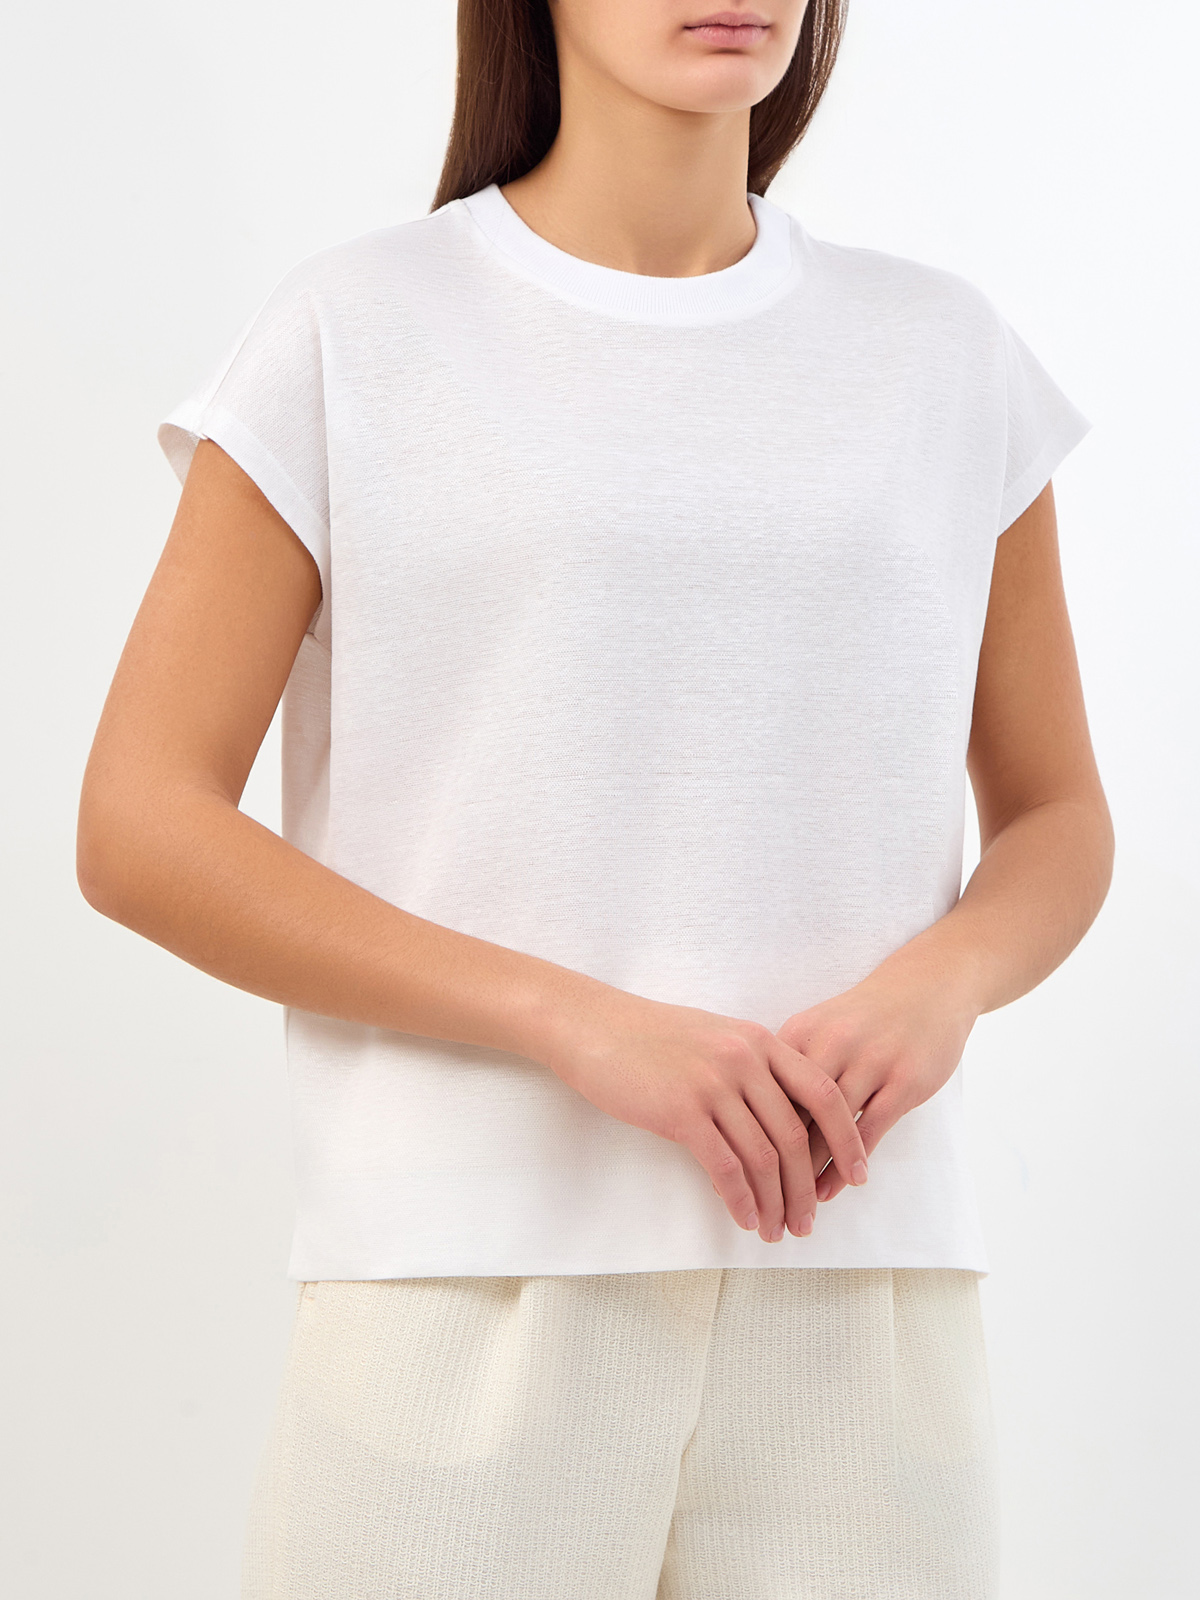 Свободная футболка из хлопка и льна с трикотажным воротом PESERICO, цвет белый, размер 38;40;42;44;48 - фото 3